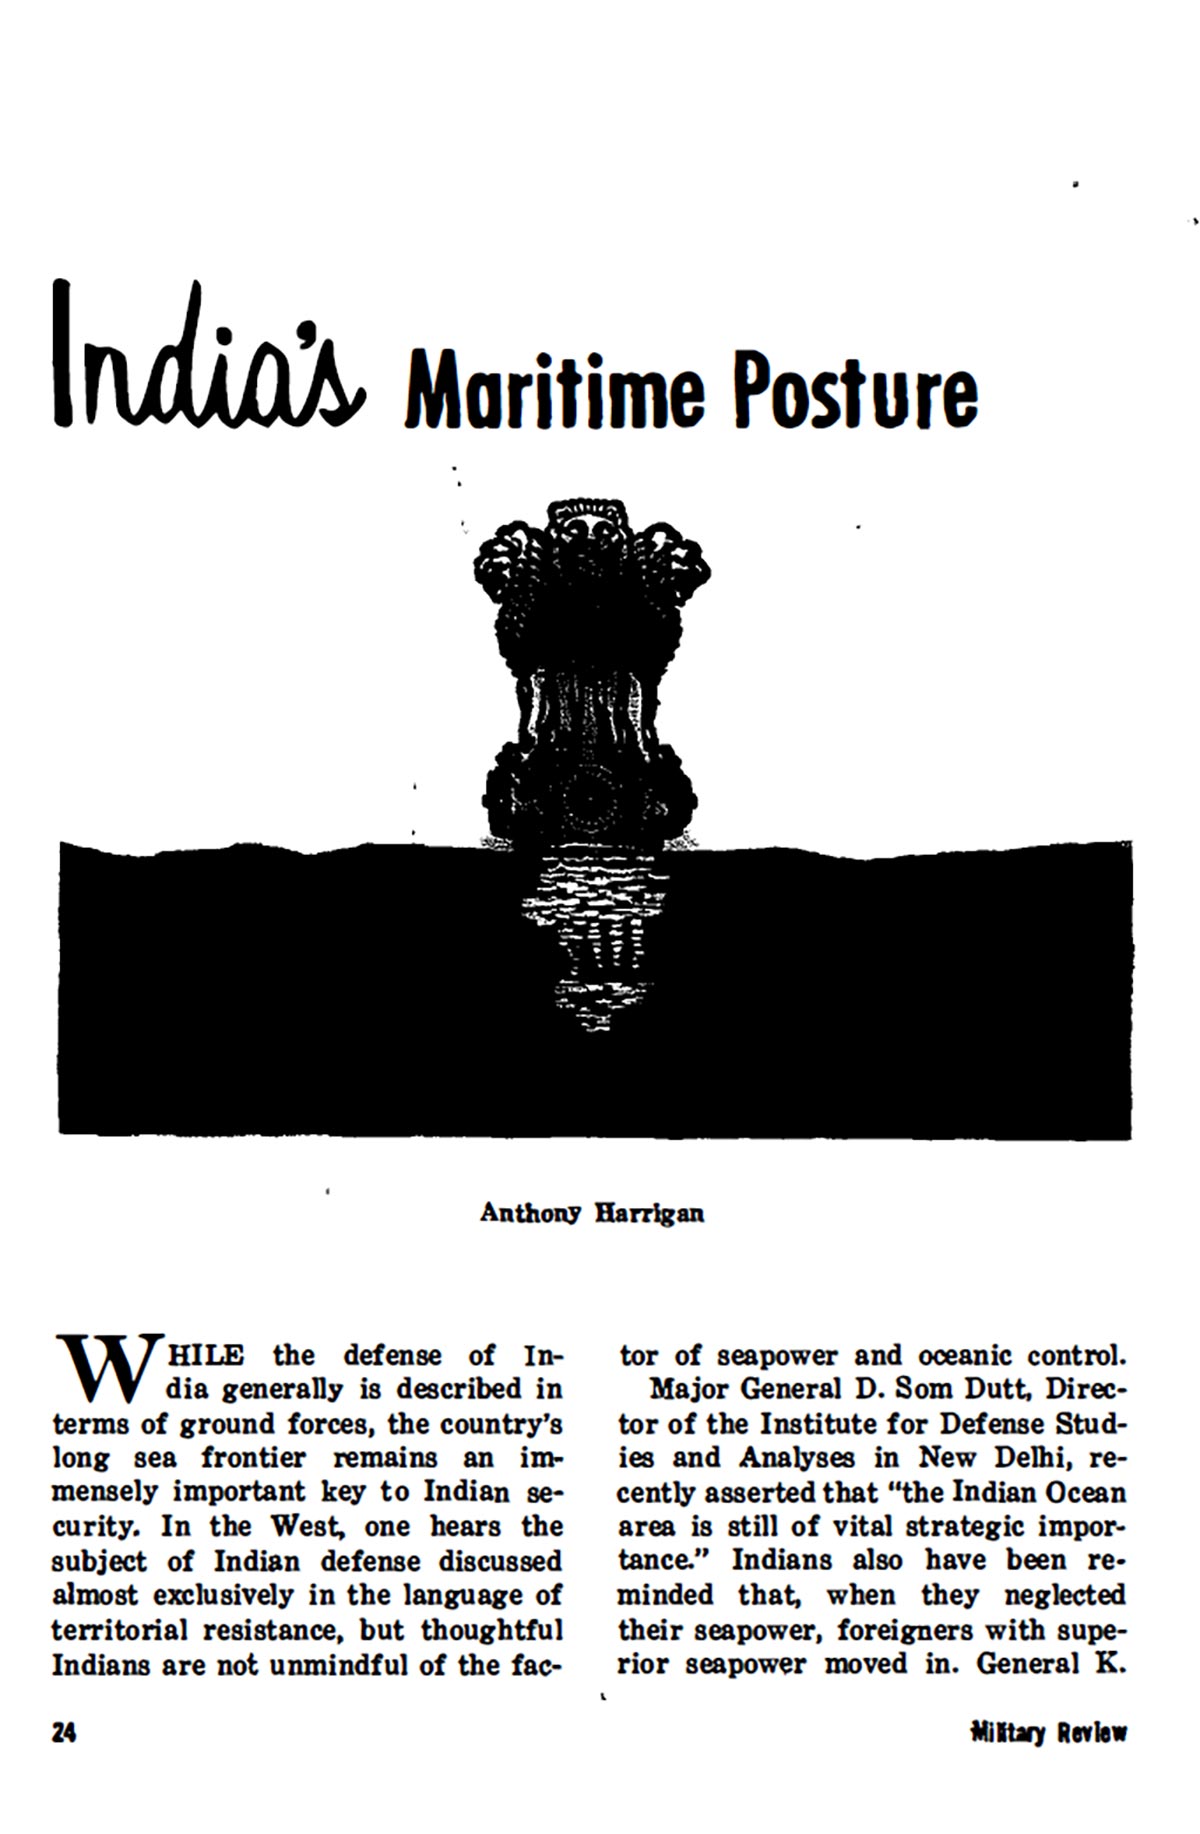 India's Maritime Posture